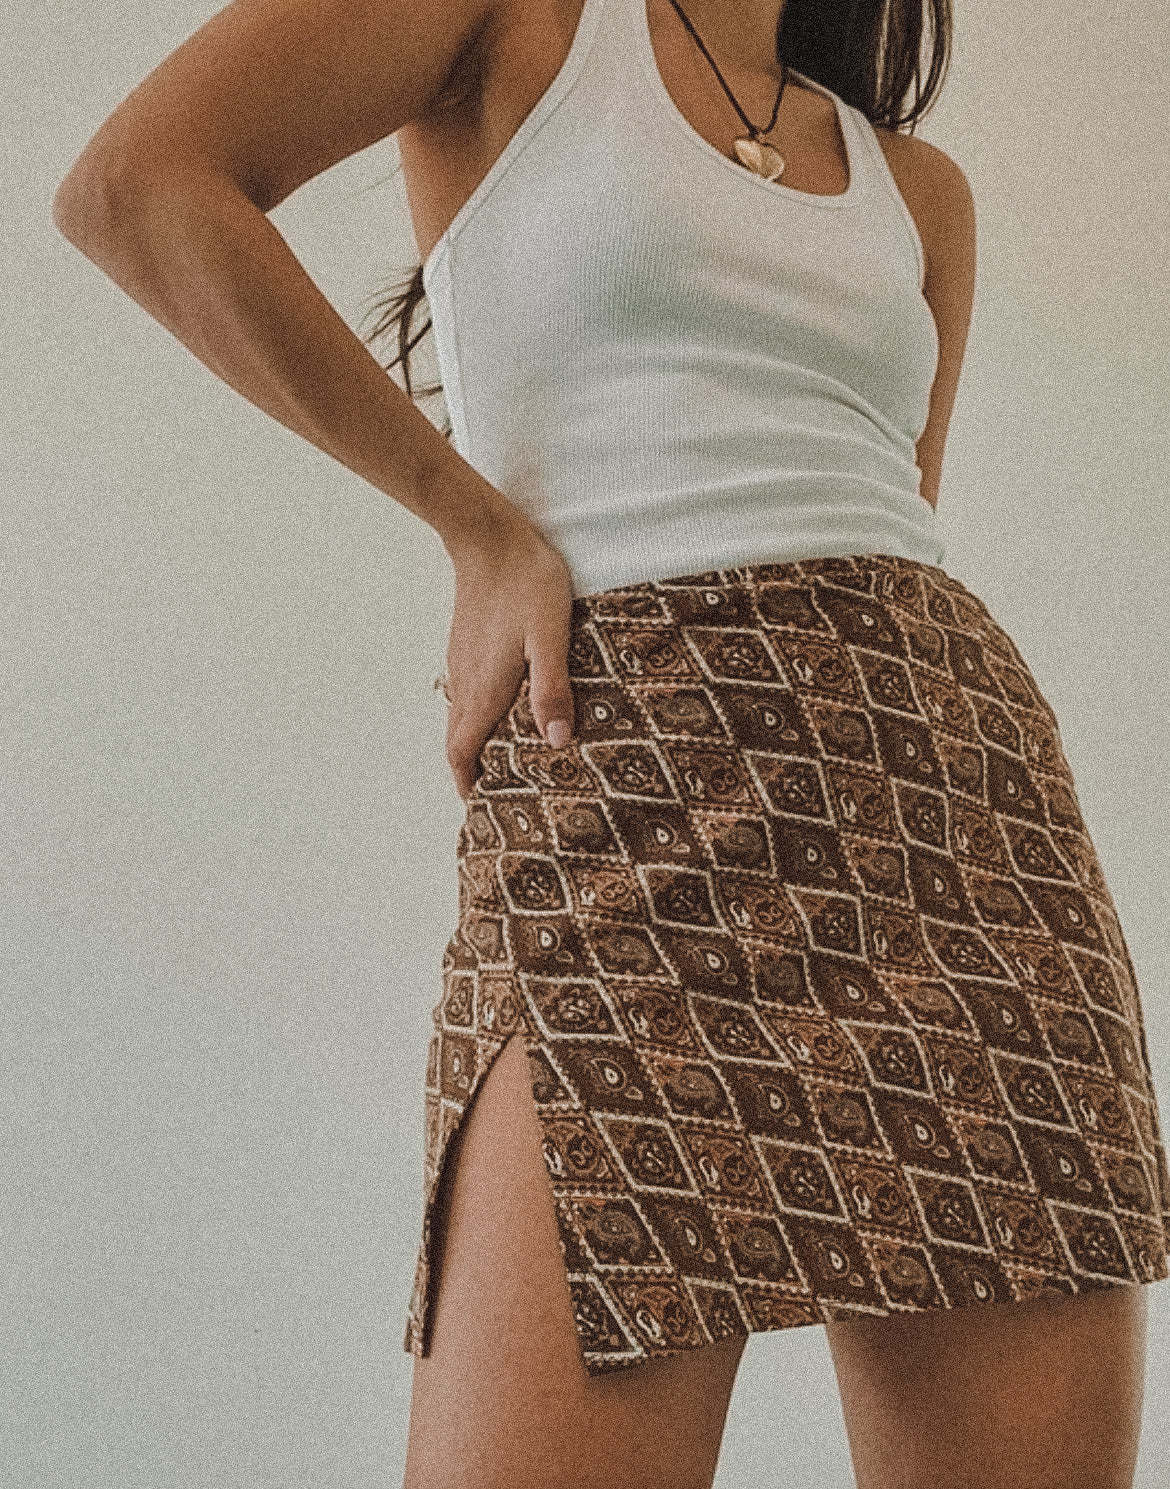 Wild Paisley Skirt